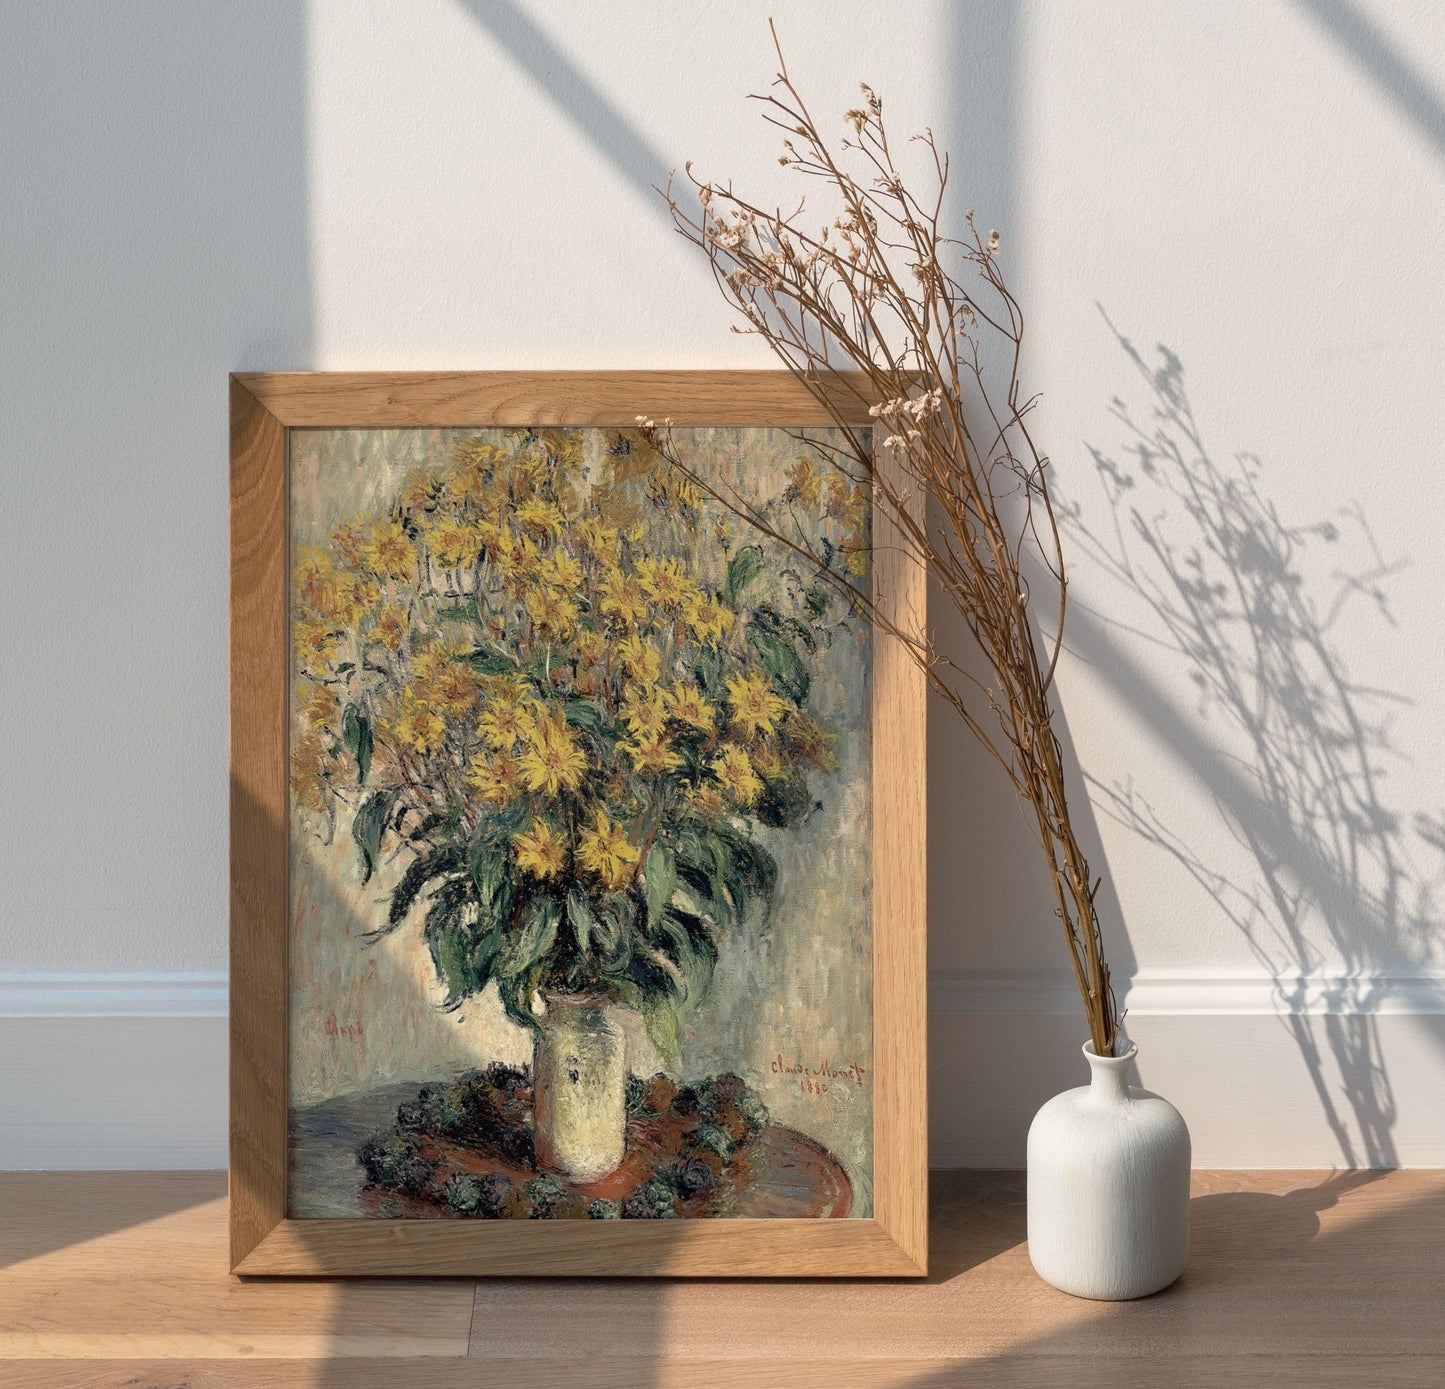 Claude Monet Vintage Floral Vase Wall Print 